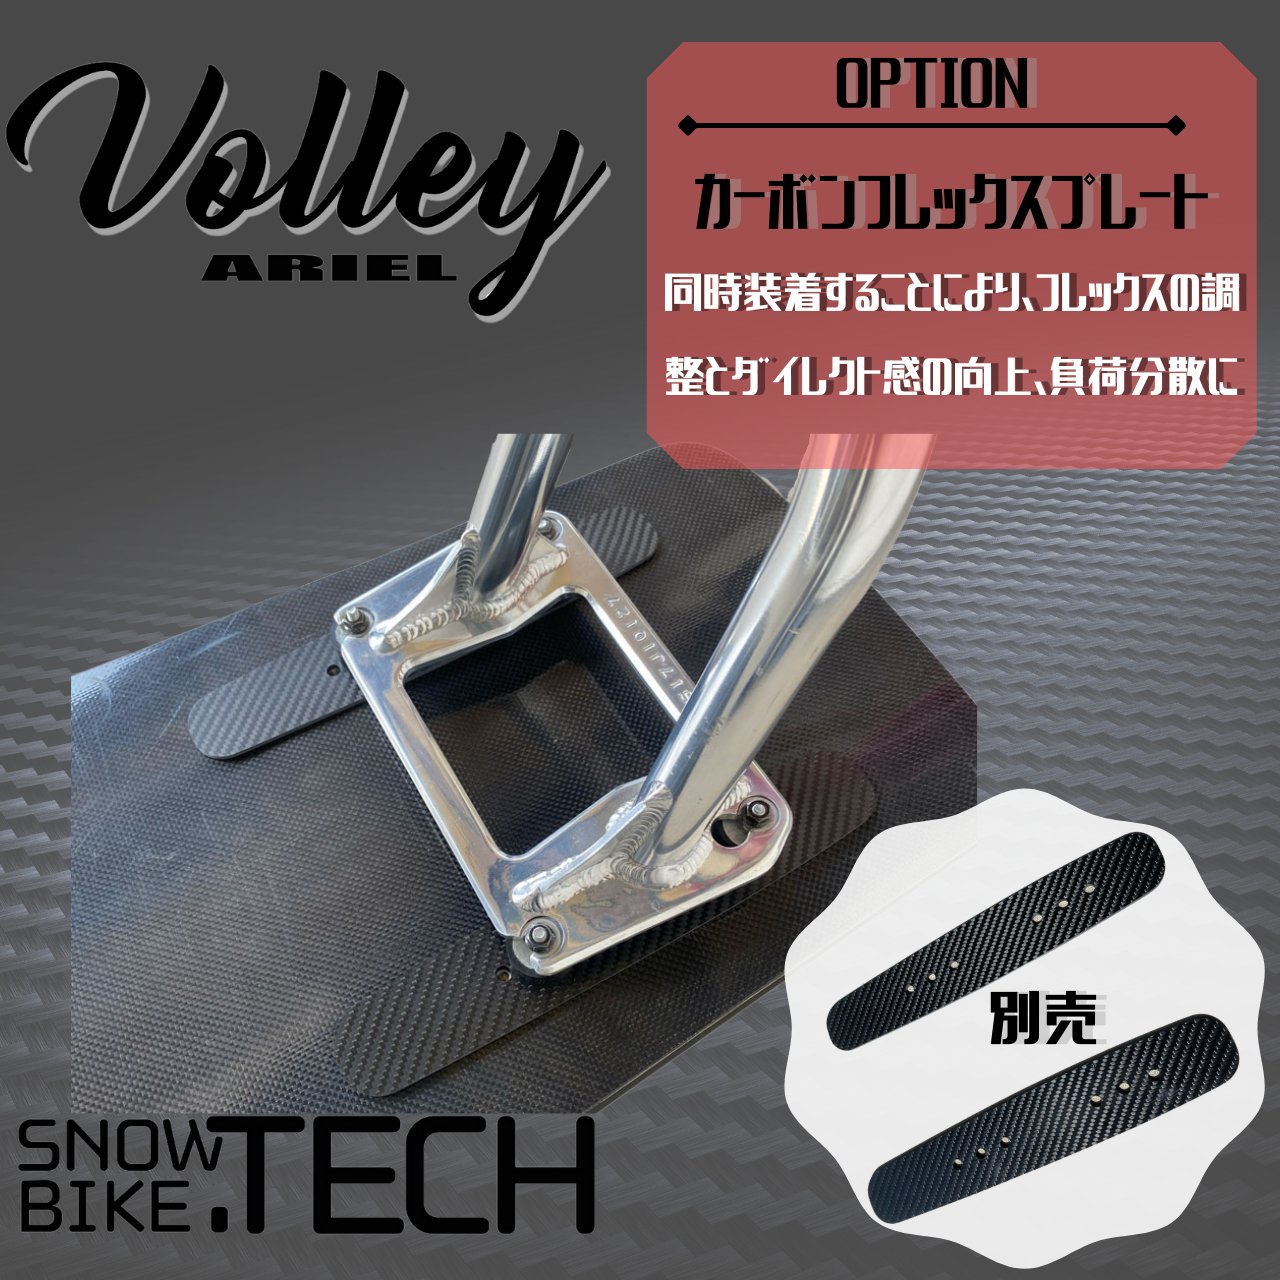 Volley ヴォレー SNOWBIKE.TECH カービングボード画像